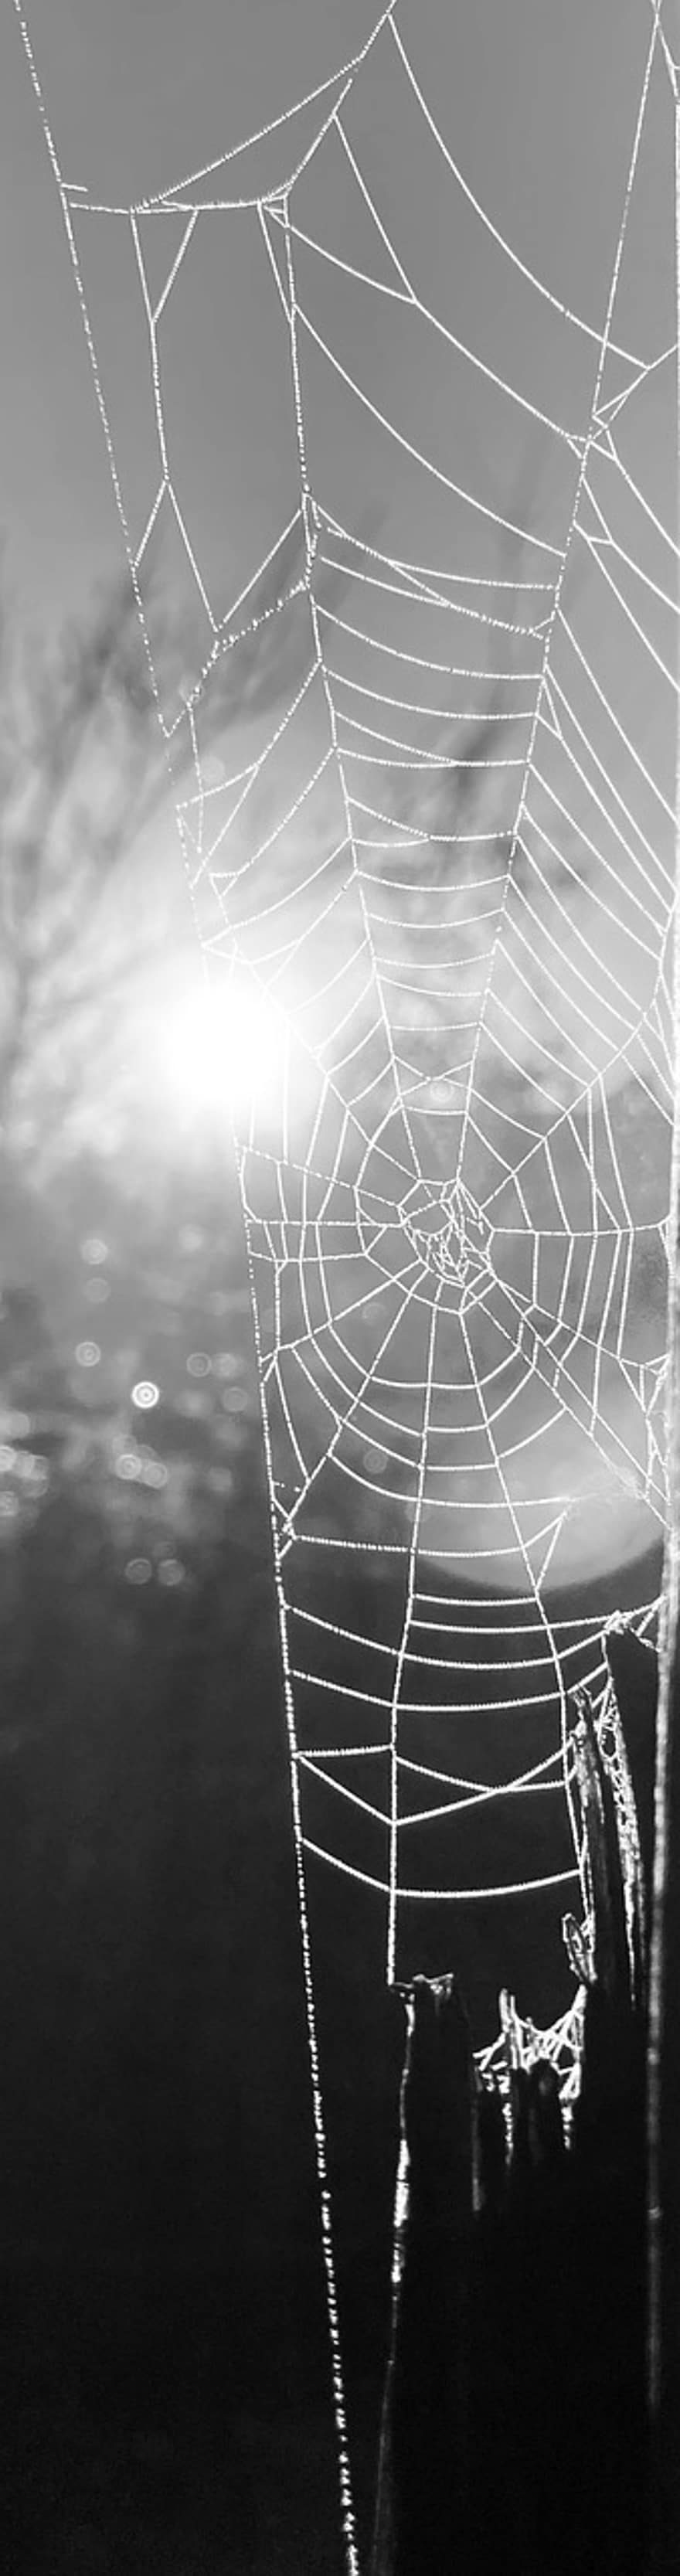 sarang laba-laba, laba-laba, alam, web, jaring laba-laba, musim dingin, merapatkan, latar belakang, embun, penurunan, basah